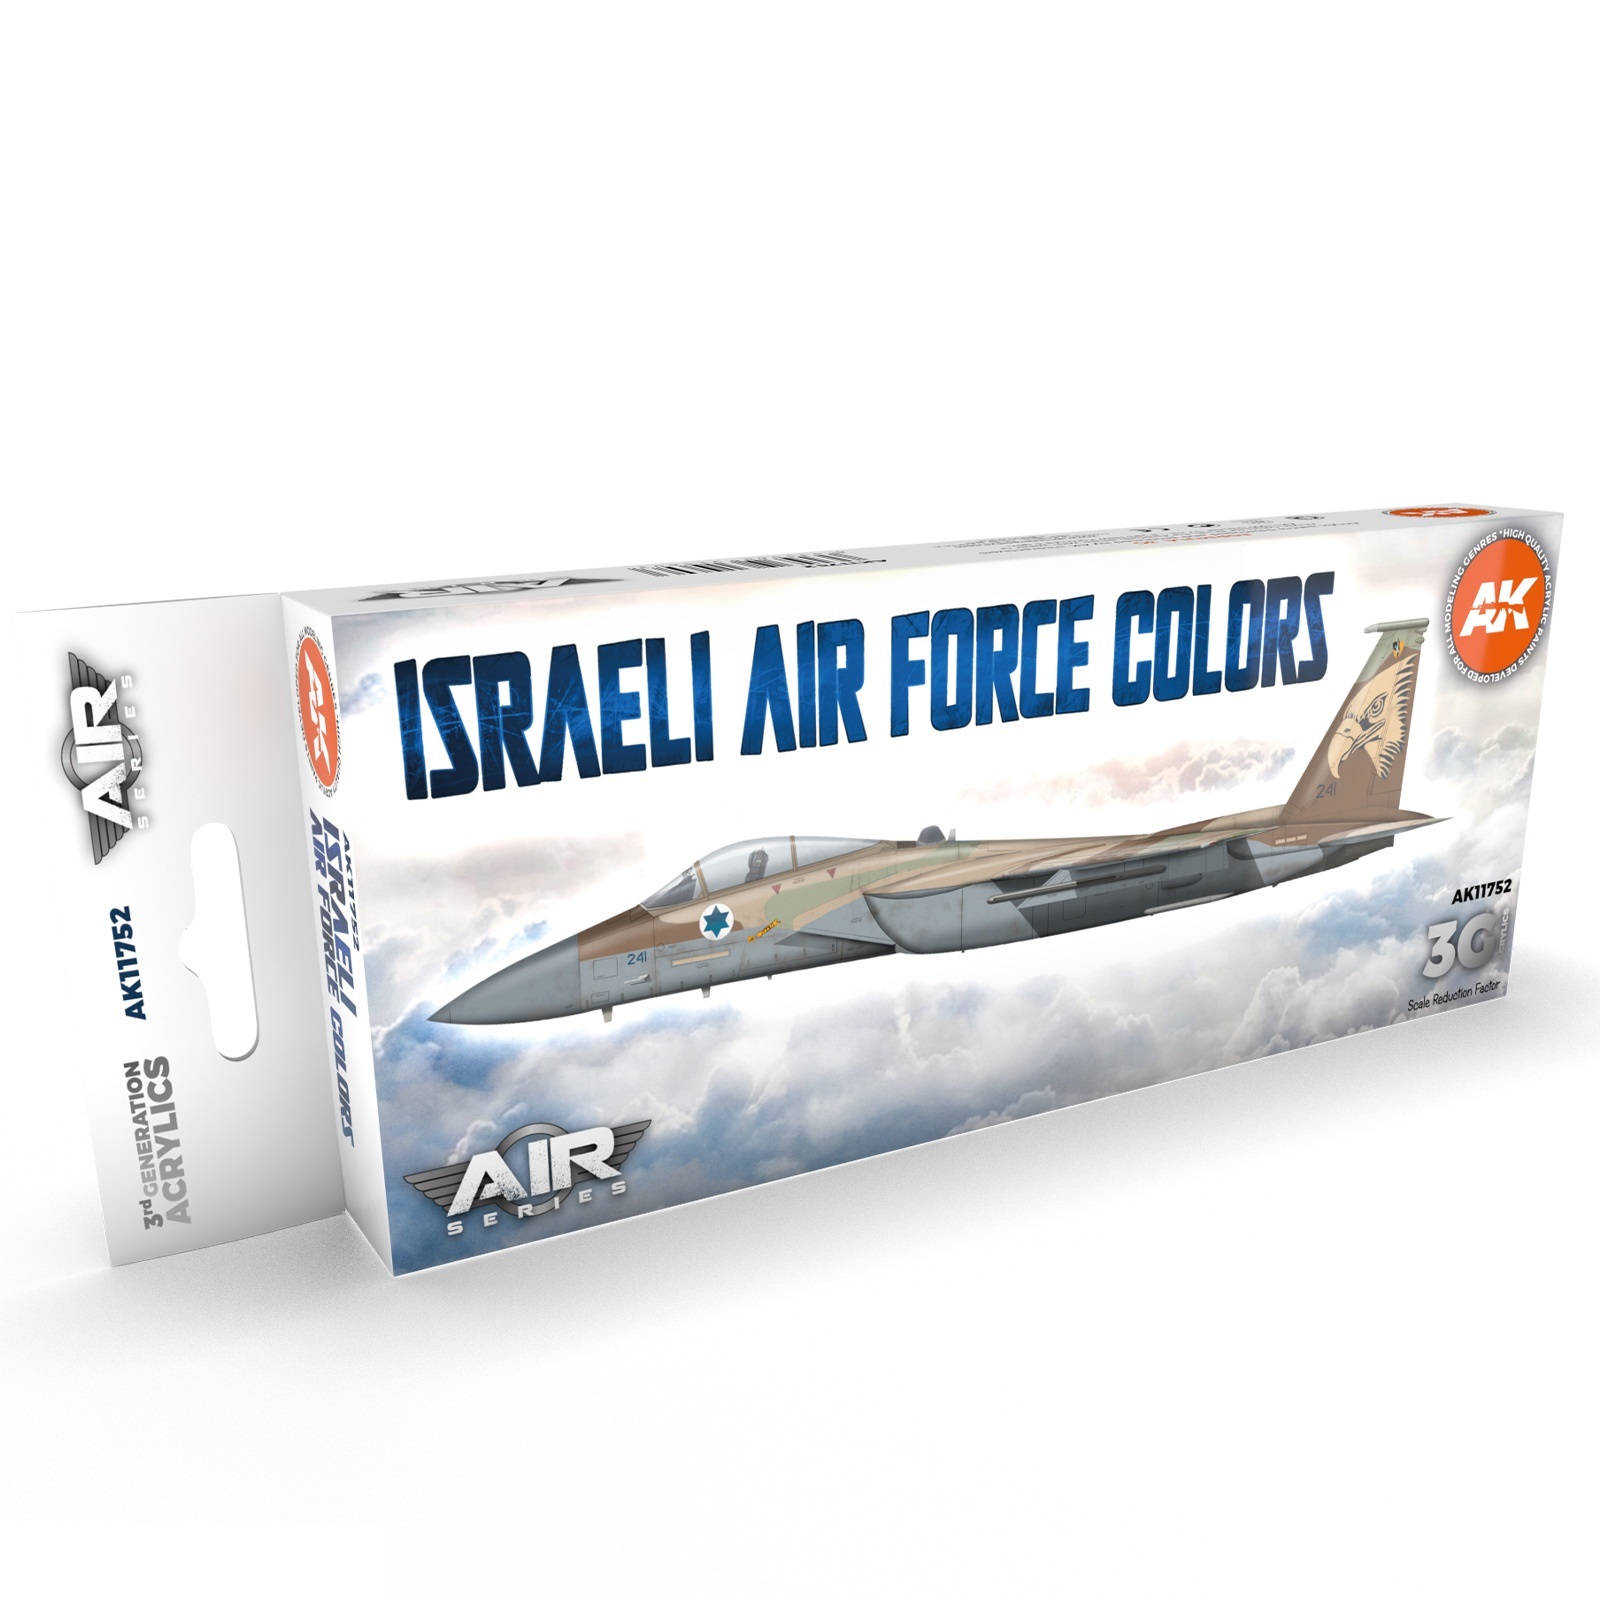 AK11752 Набор красок Israeli Air Force Colors SET 3G